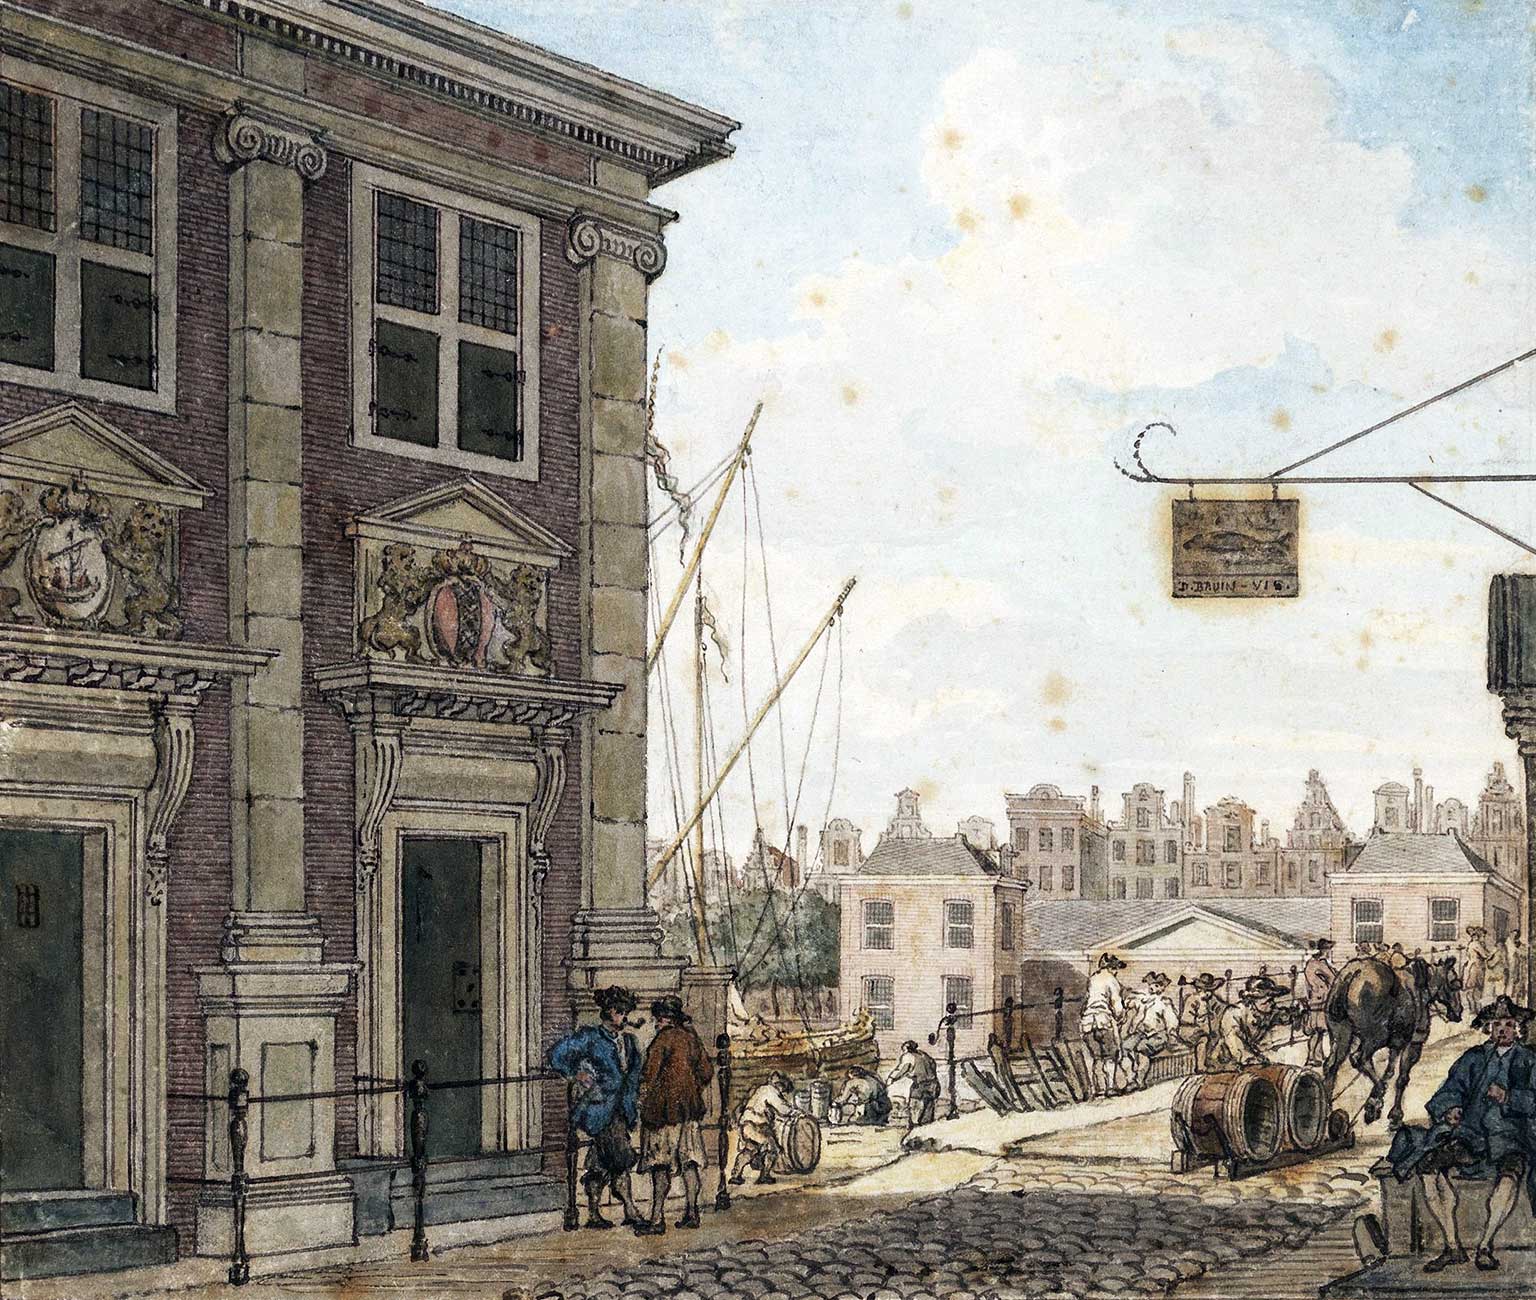 Accijnshuis, Amsterdam, in 1768, gezien vanaf de Oudebrugsteeg naar het Damrak